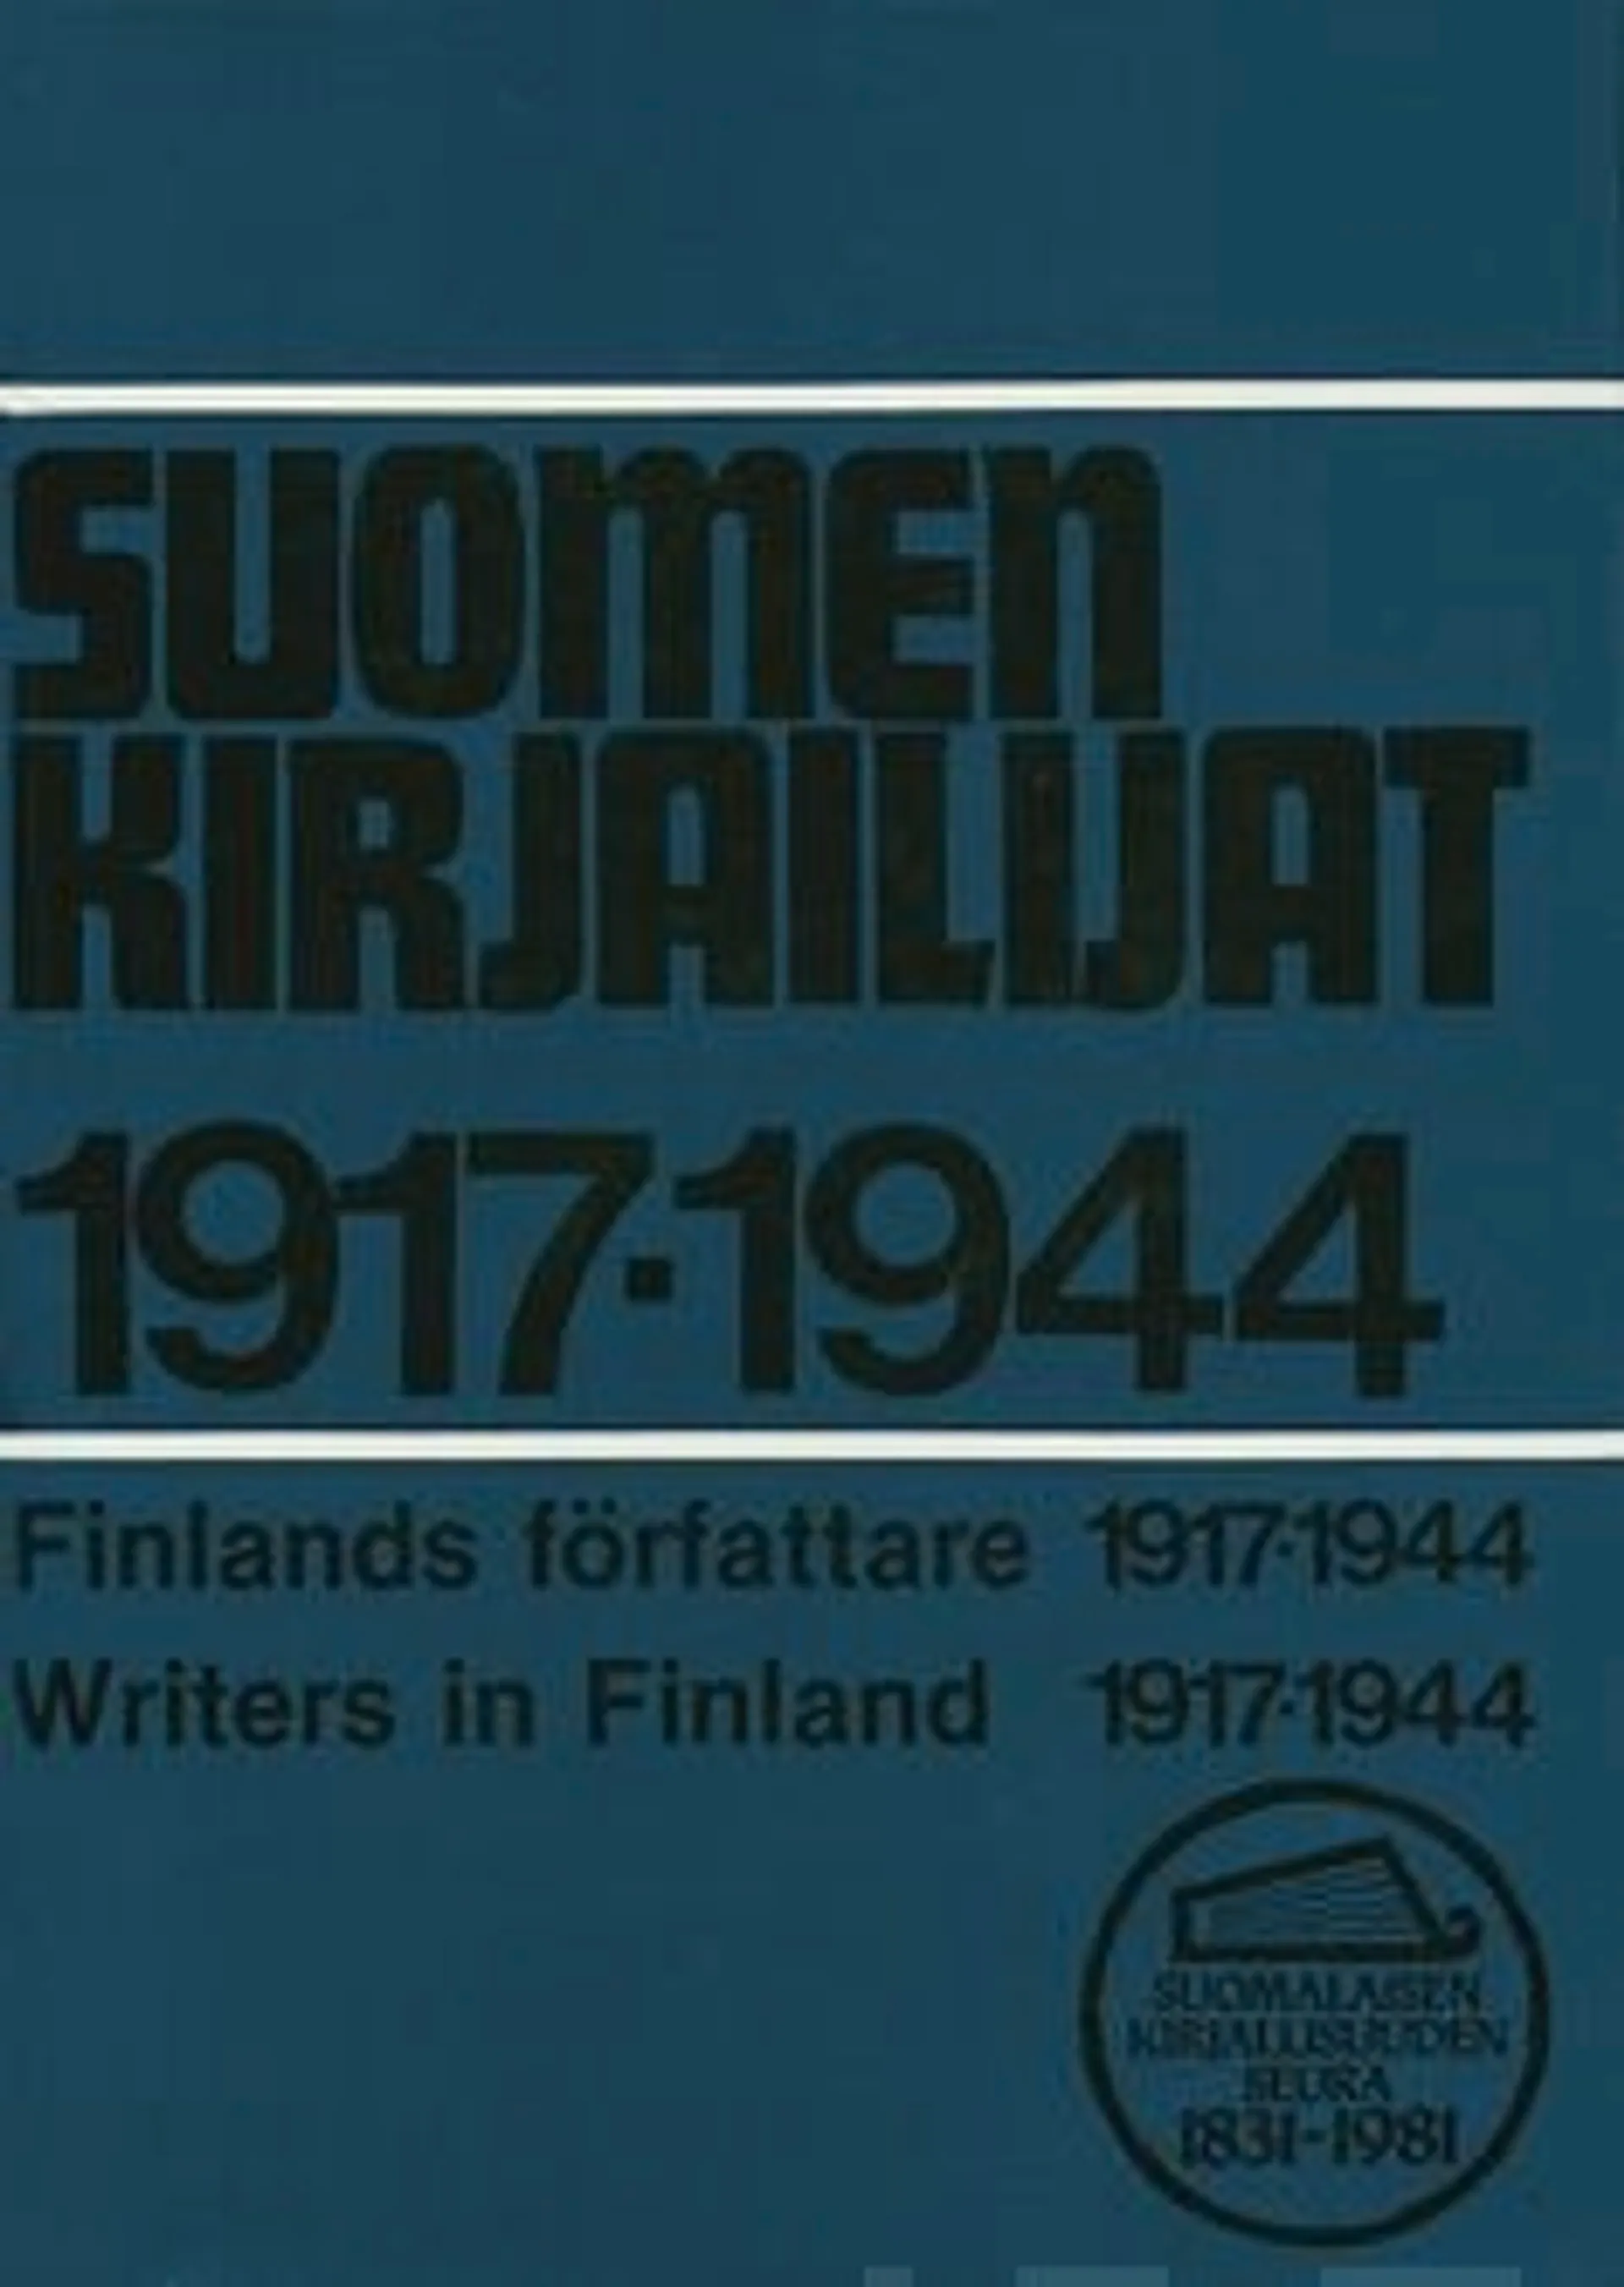 Suomen kirjailijat 1917-1944